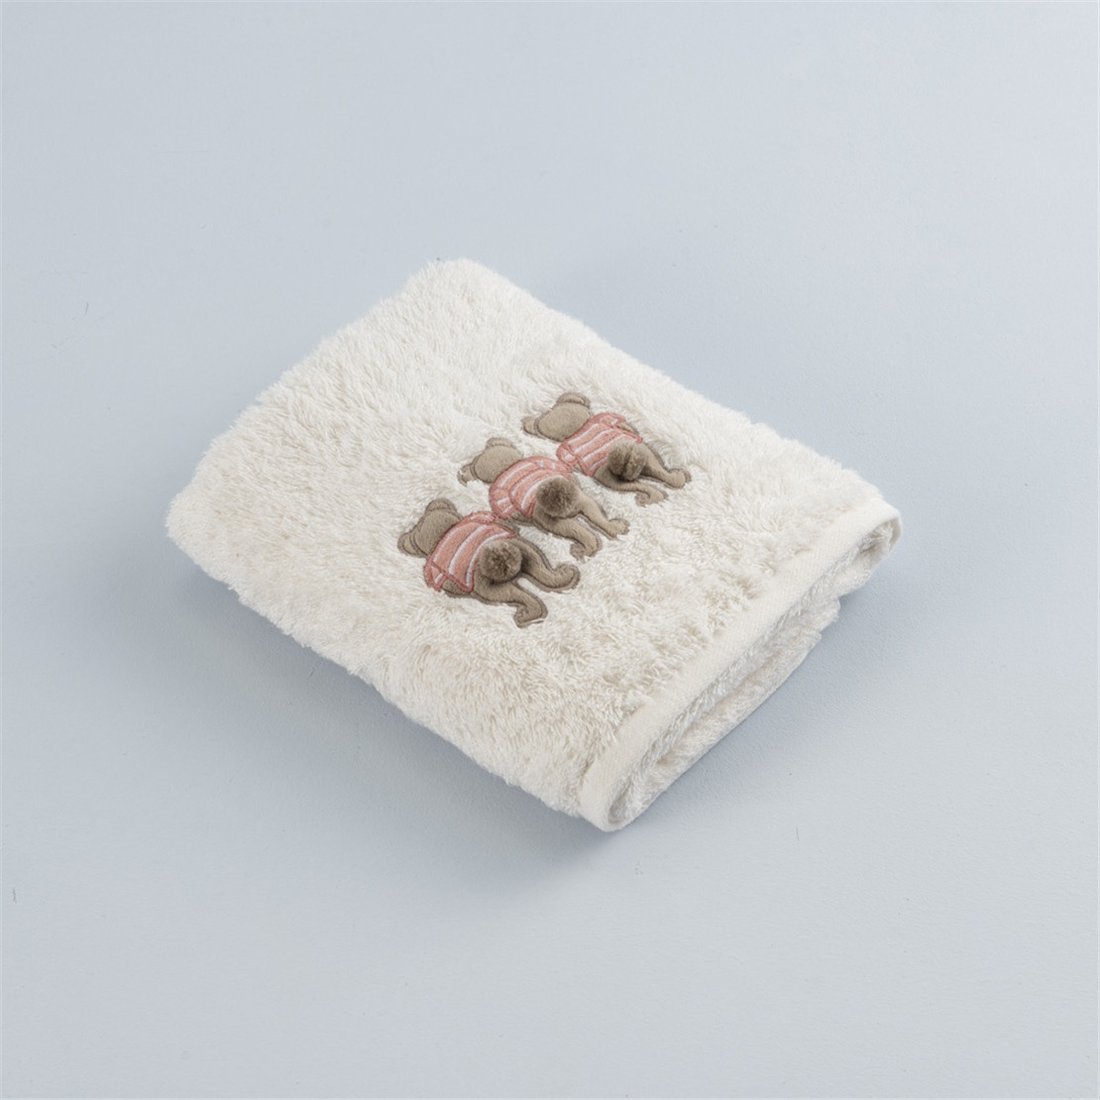 Мягкое детское полотенце банное Bear 3 размер 70*130 молочного цвета